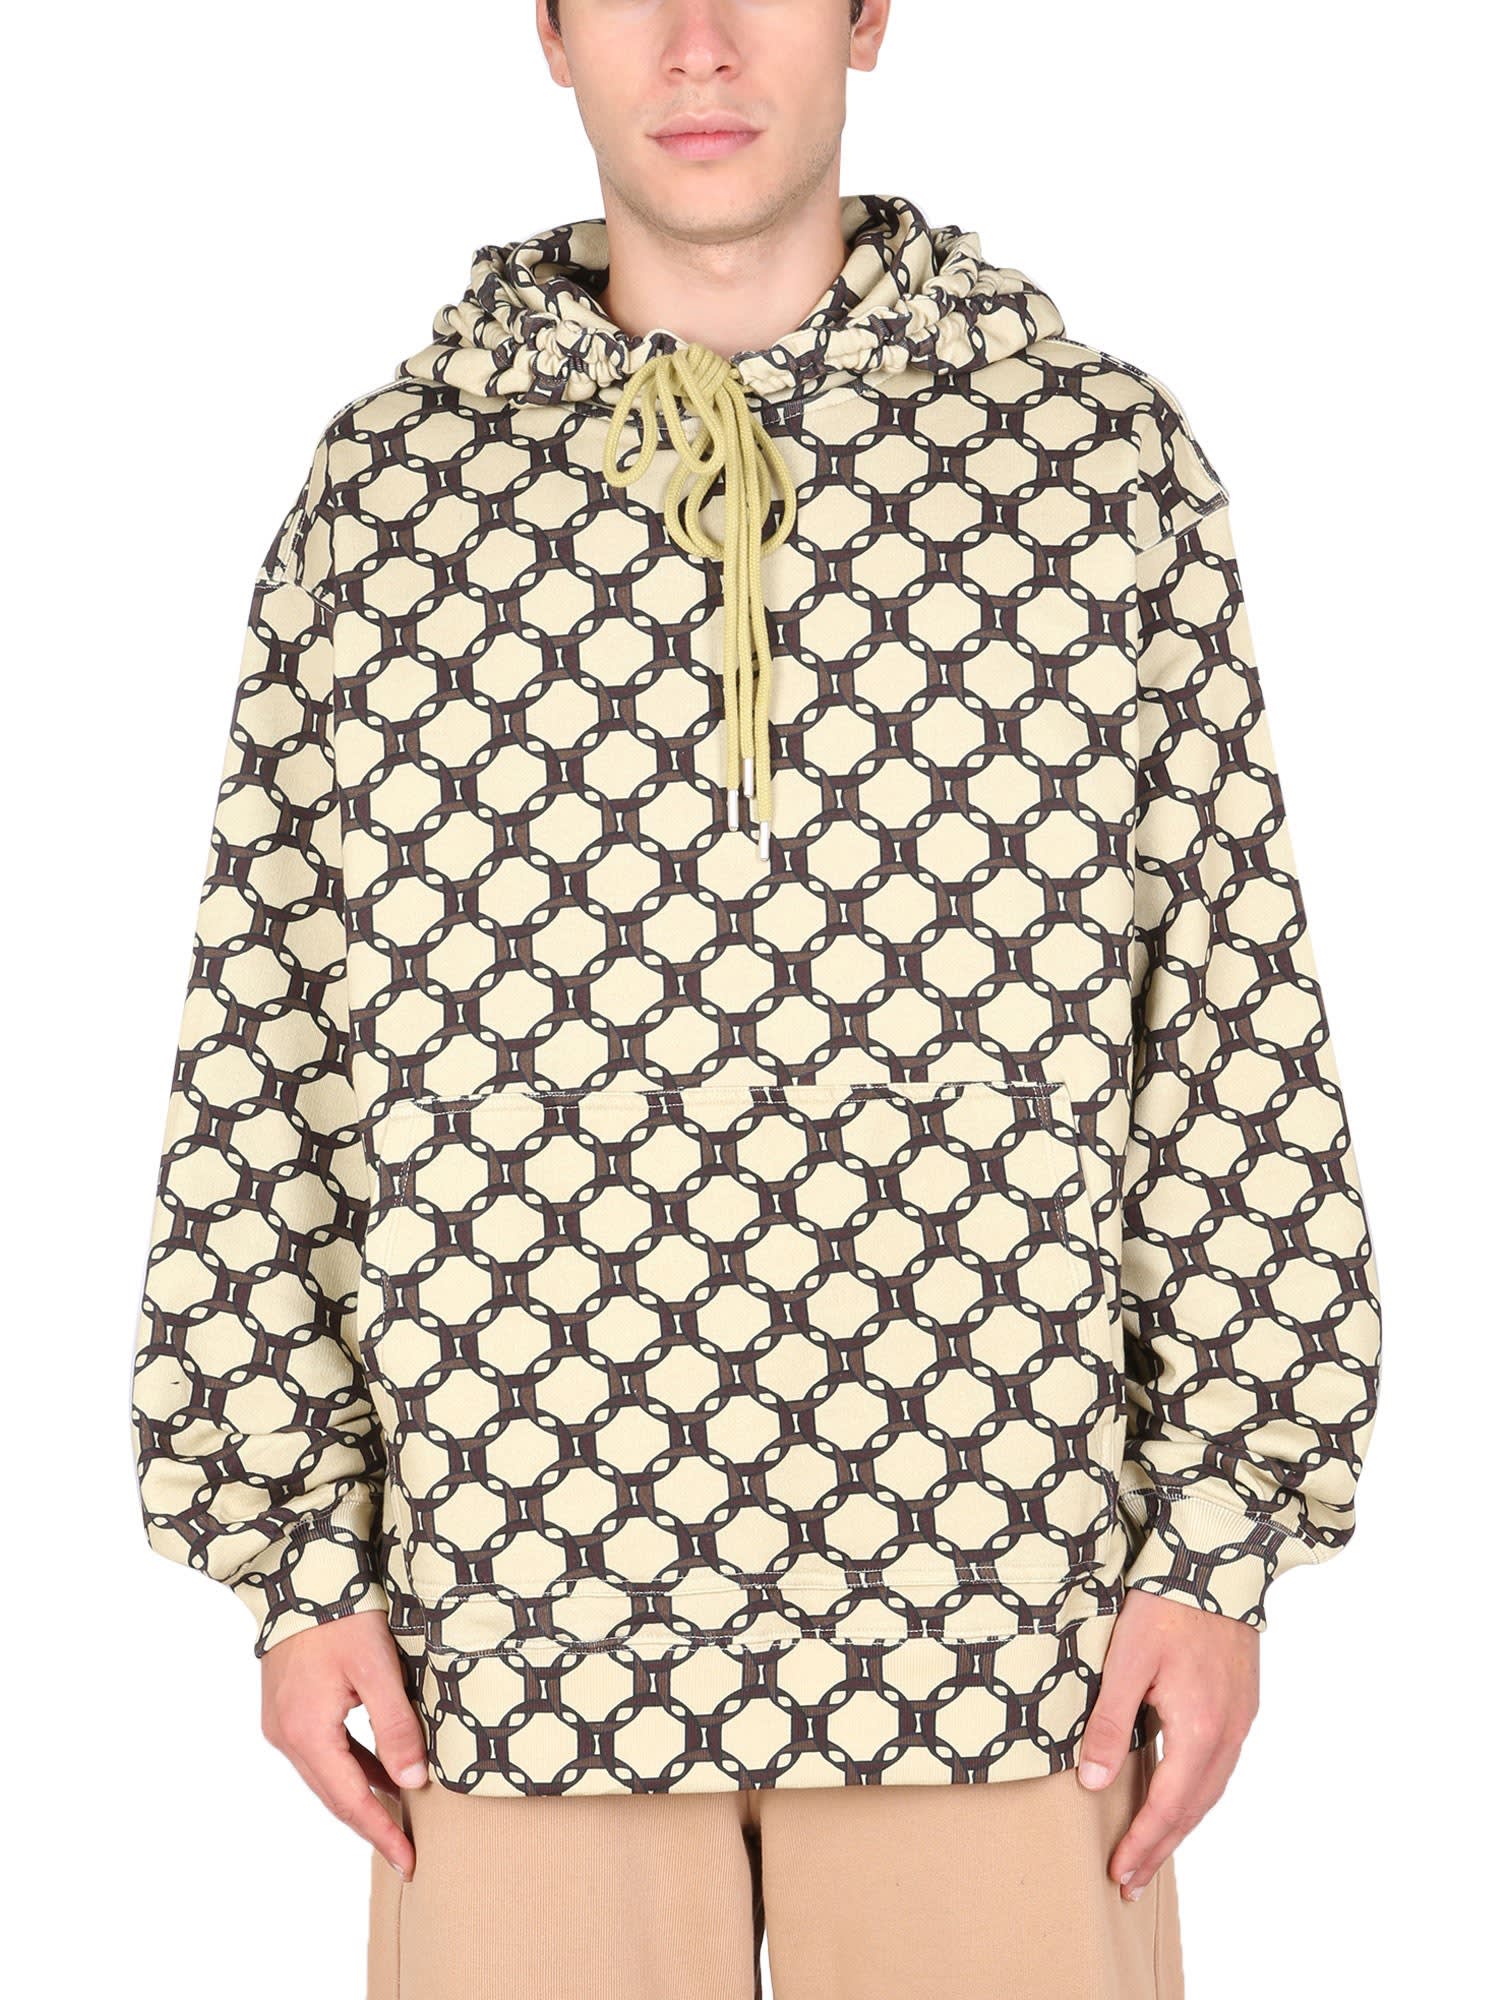 Dries Van Noten Sweatshirt With Geometric Print